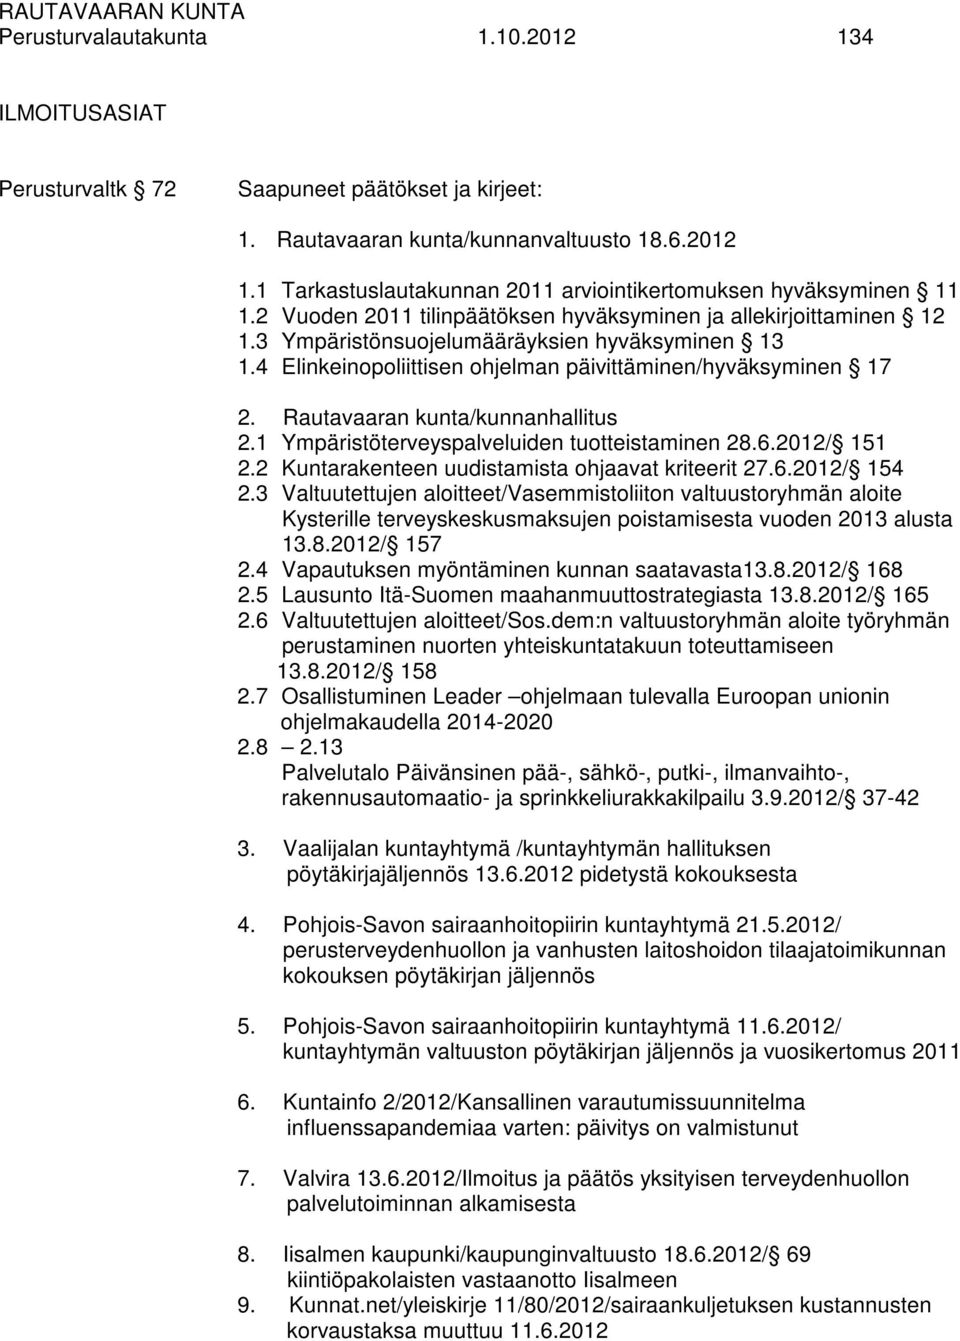 Rautavaaran kunta/kunnanhallitus 2.1 Ympäristöterveyspalveluiden tuotteistaminen 28.6.2012/ 151 2.2 Kuntarakenteen uudistamista ohjaavat kriteerit 27.6.2012/ 154 2.